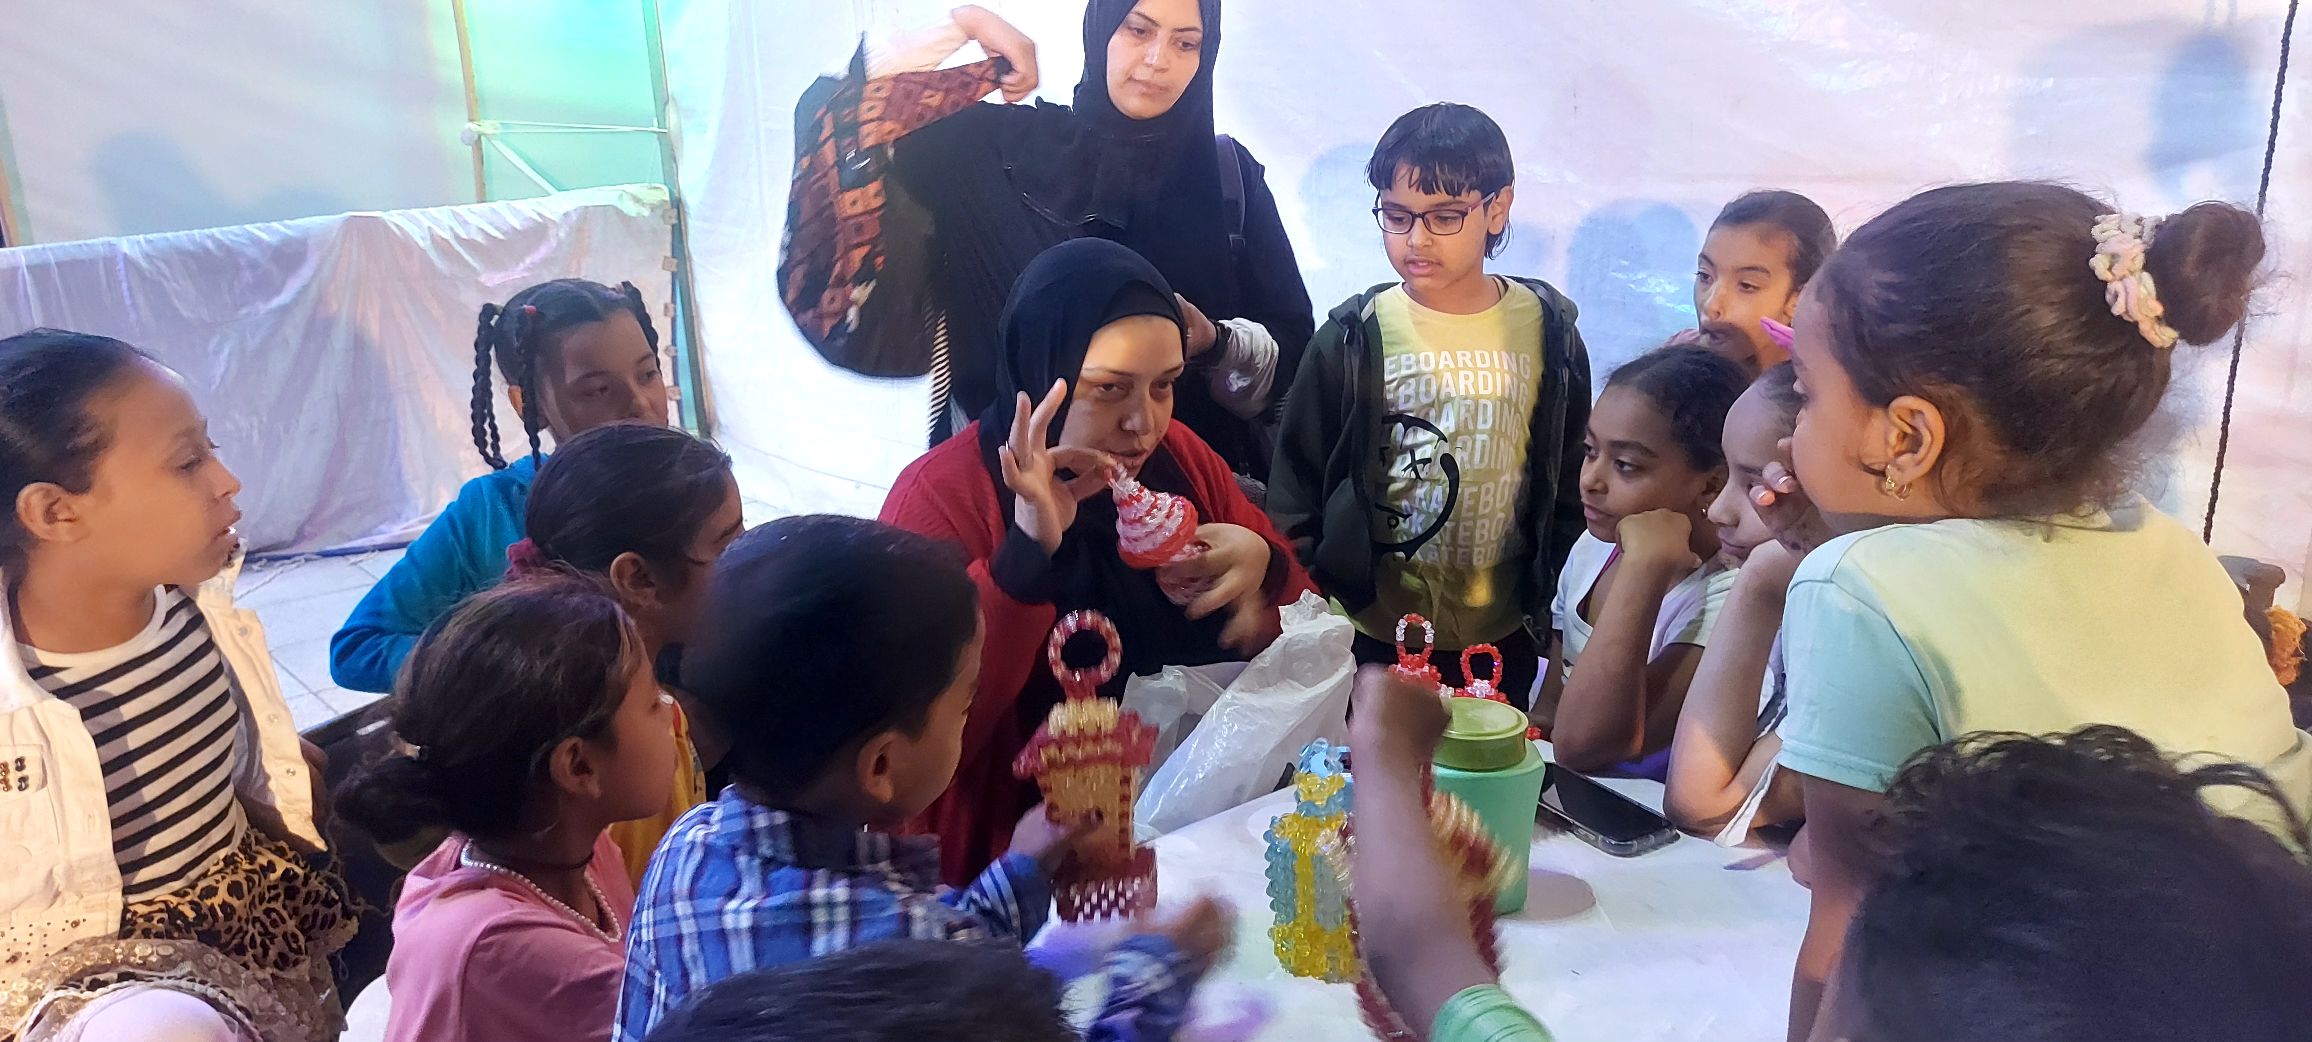 ورش حكى ومسرح عرائس للأطفال في ليالى رمضان الثقافية